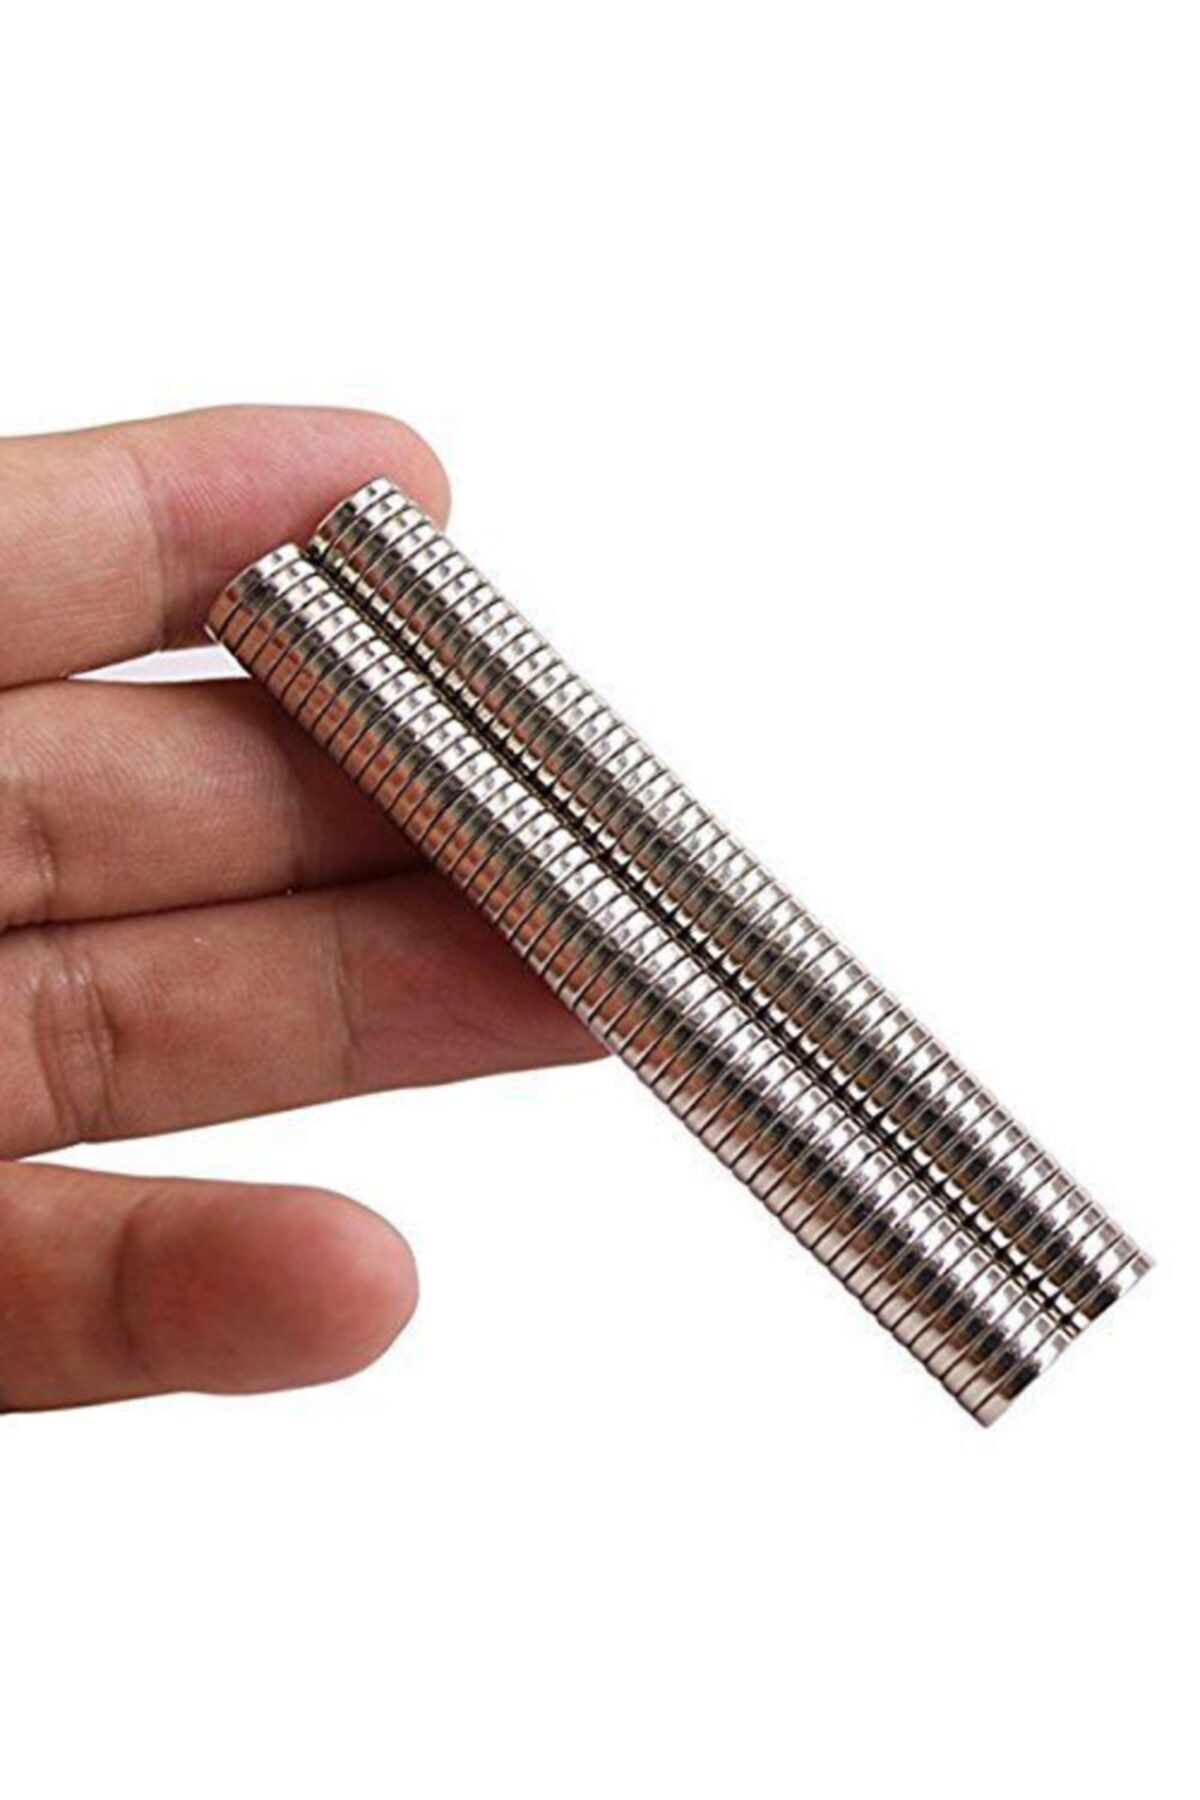 Dünya Magnet Yuvarlak Süper Güçlü Neodyum Mıknatıs 25 Adet Çap 9mm x Kalınlık 1,5mm